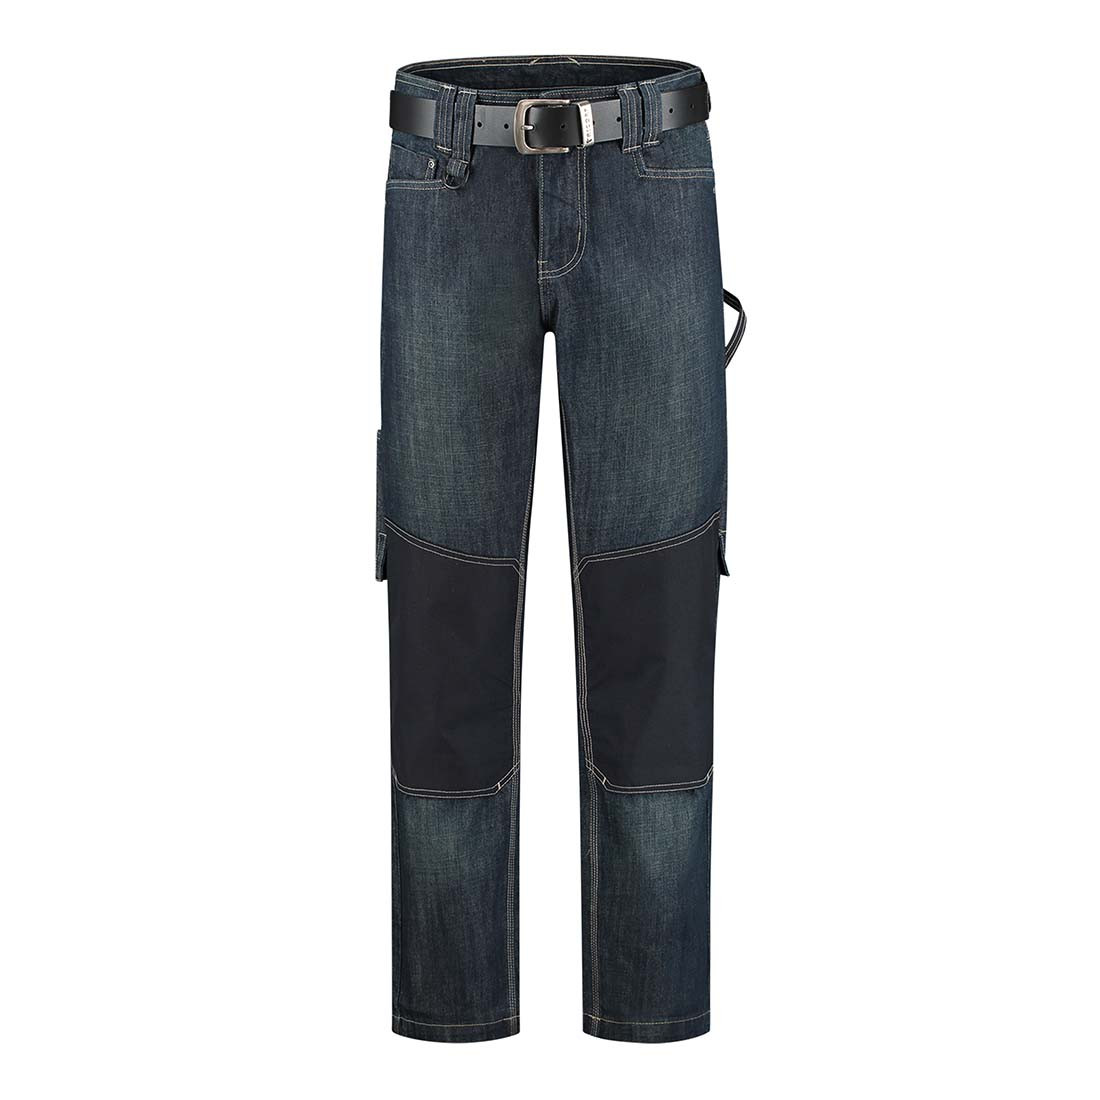 Unisex Work Jeans - Safetywear